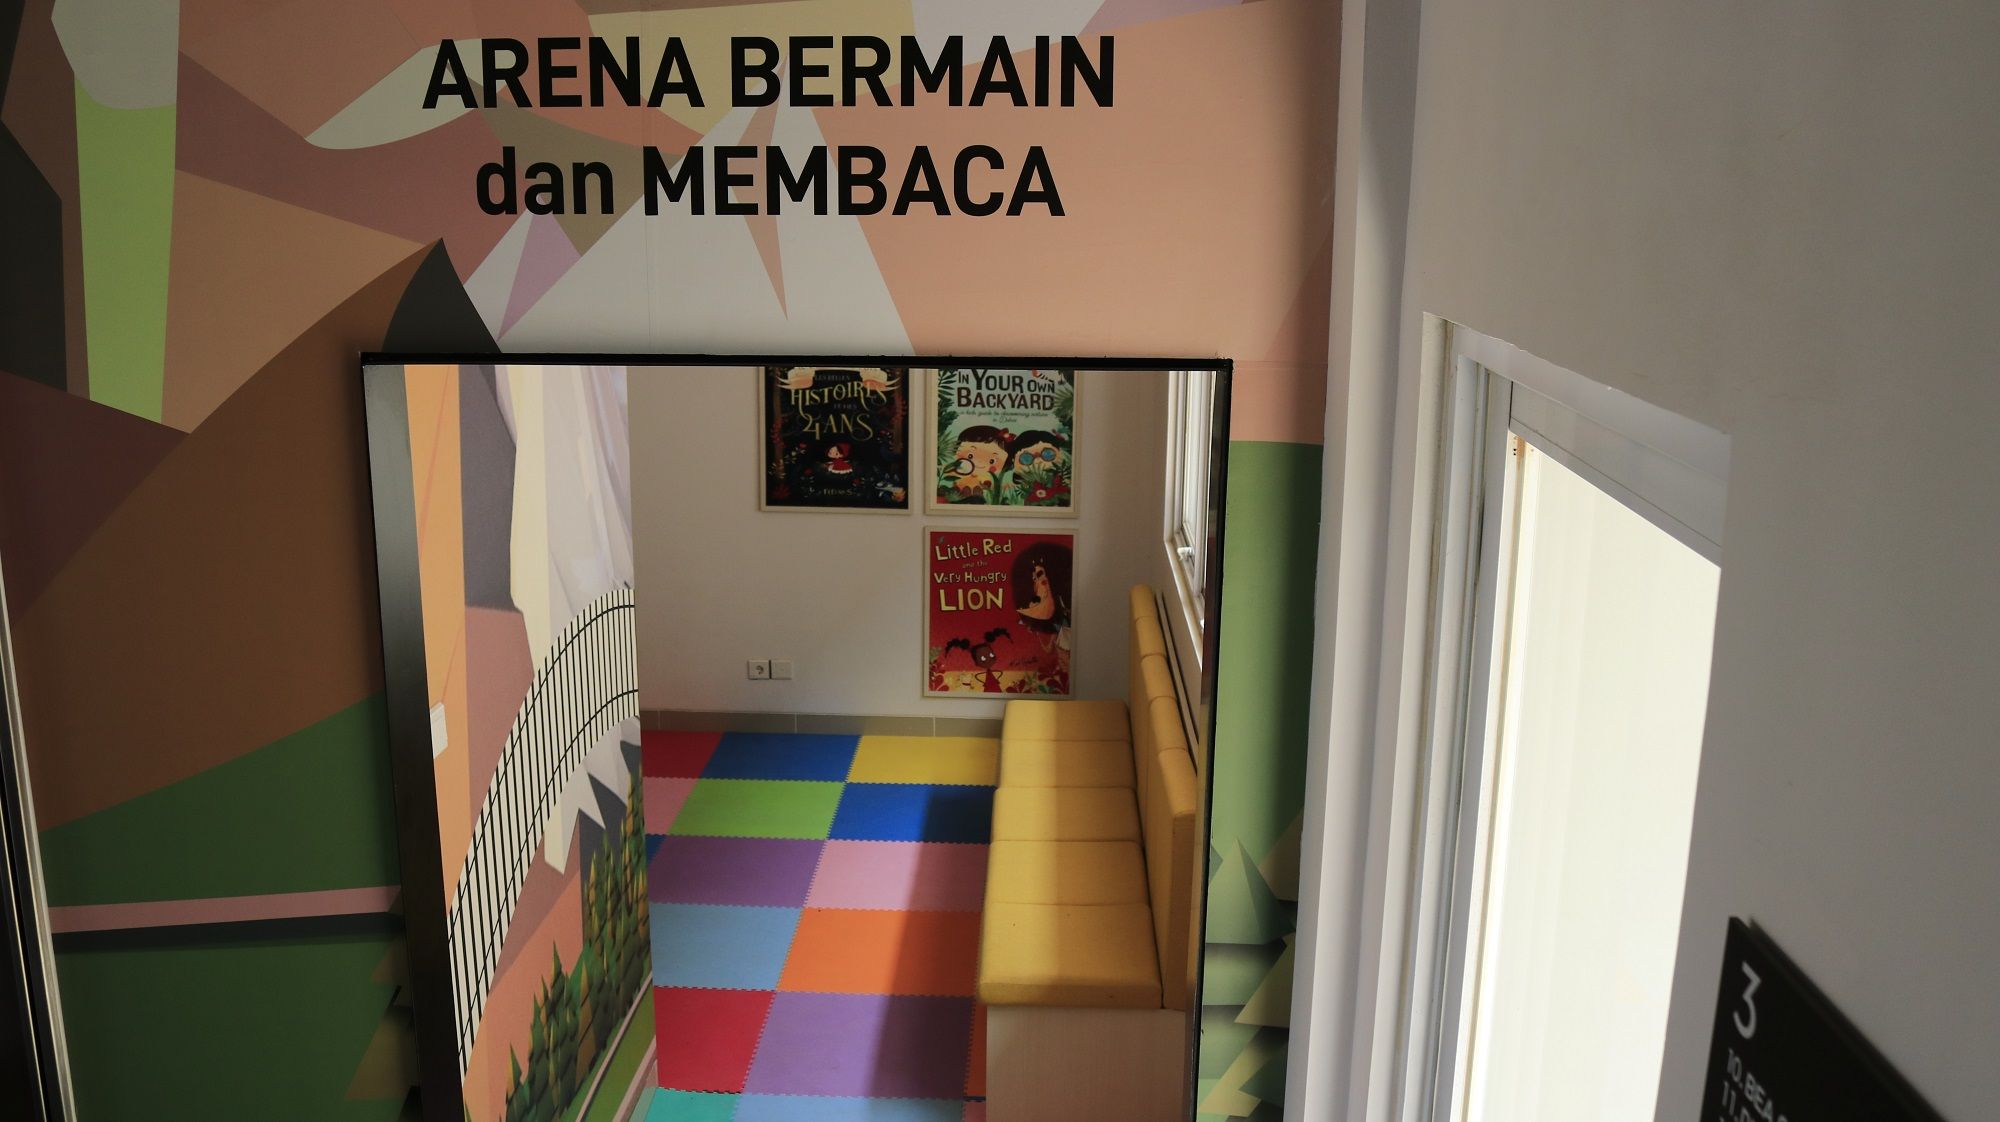 Gerai Pelayanan Publik Summarecon Bandung memiliki fasilitas lift, ruang tunggu, ruang laktasi, musala, ruang baca, ruang bermain, jalur khusus untuk penyandang disabilitas serta fasilitas parkir kendaraan roda dua dan roda empat.